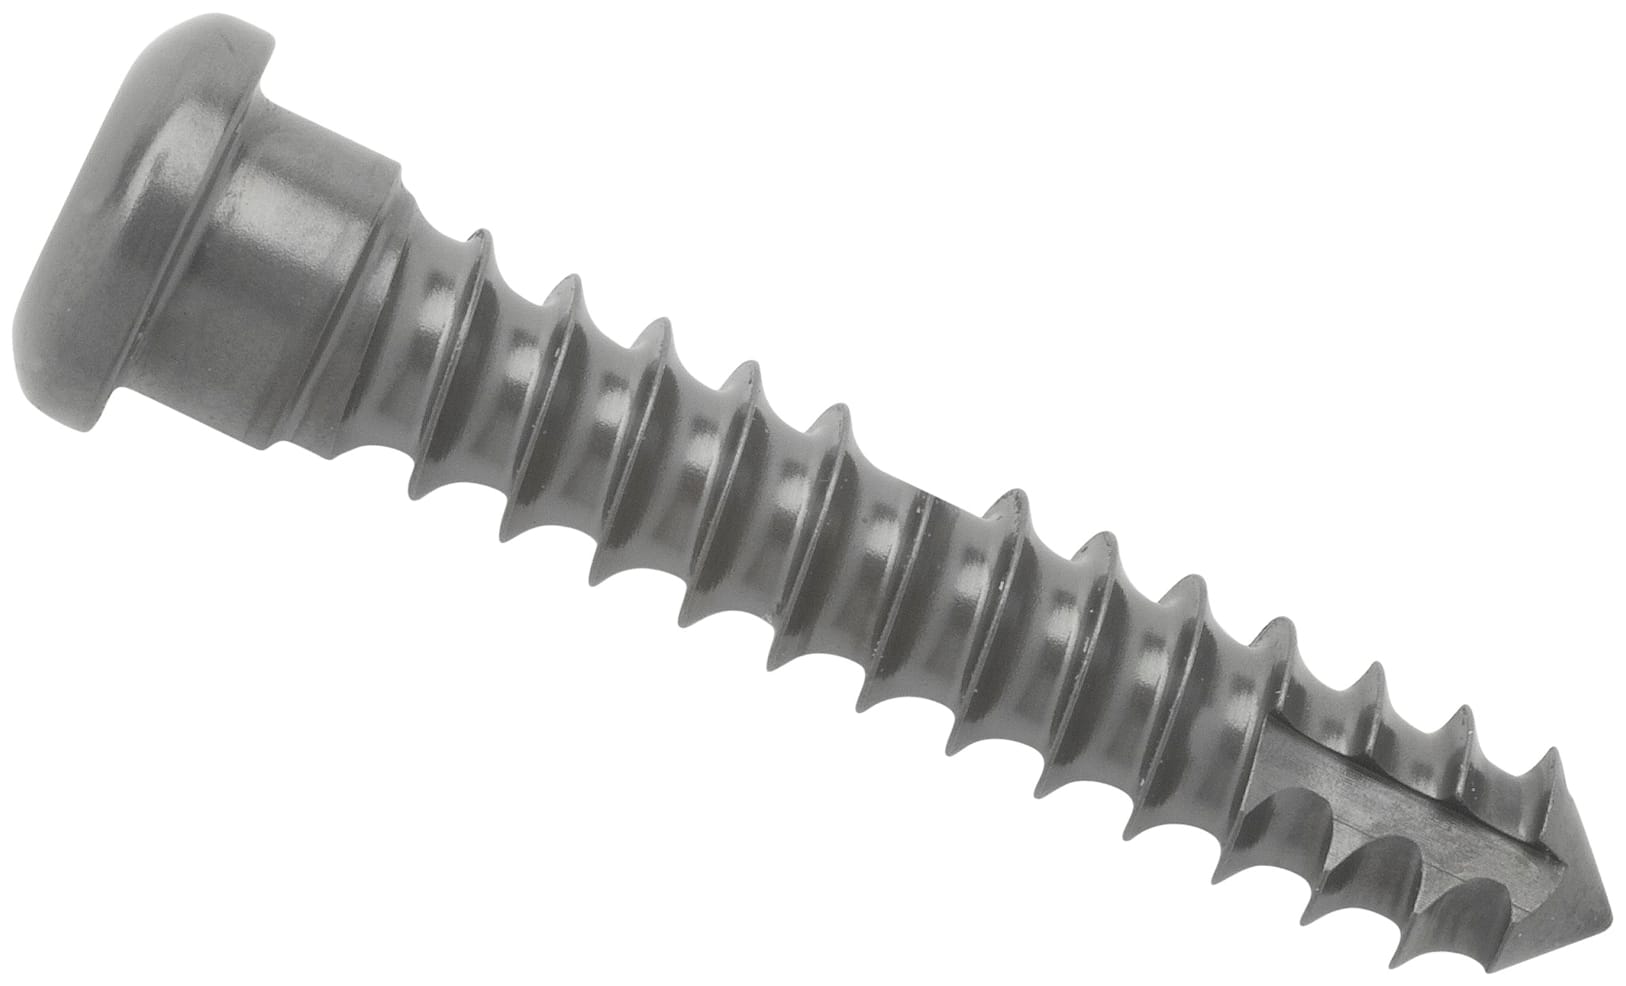 Cortical Screw, 3.5 mm x 20 mm